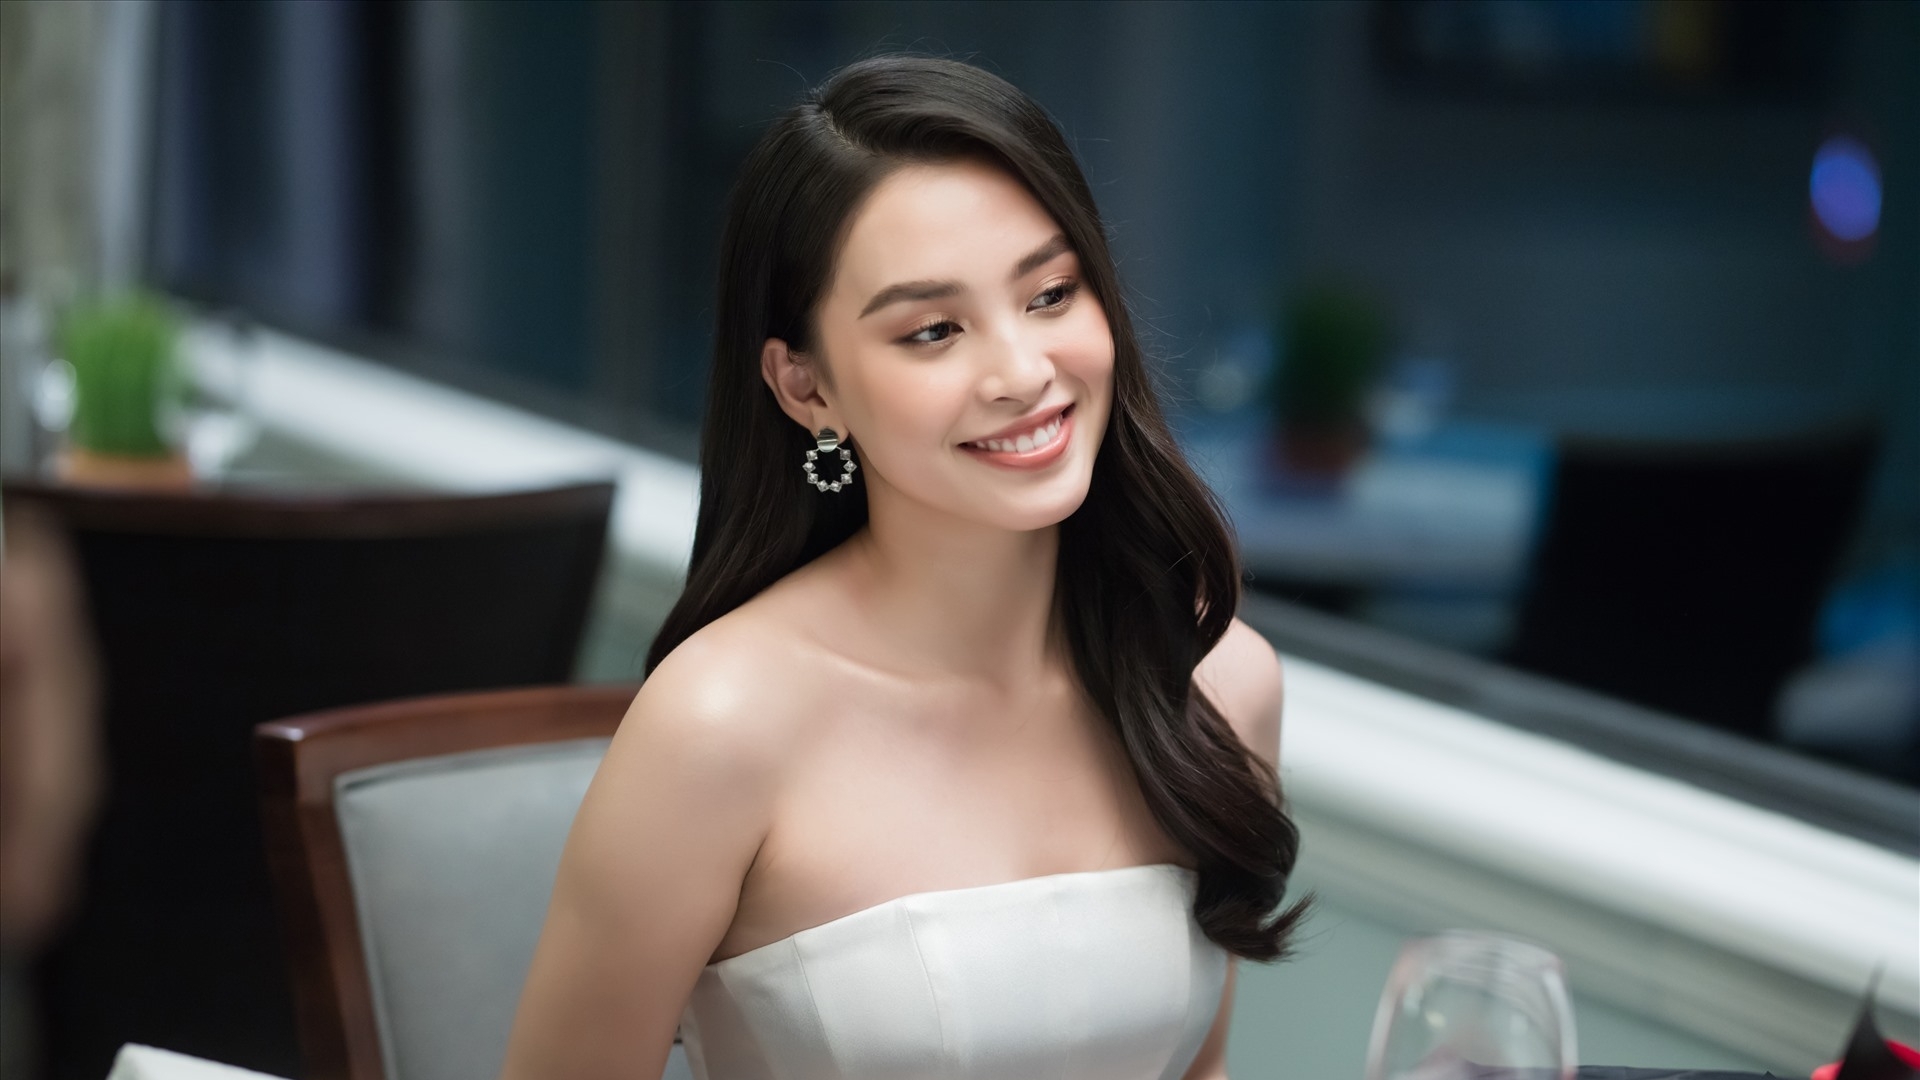 Hoa hậu Trần Tiểu Vy háo hức báo tin vui, chuẩn bị làm lễ tốt nghiệp đại học